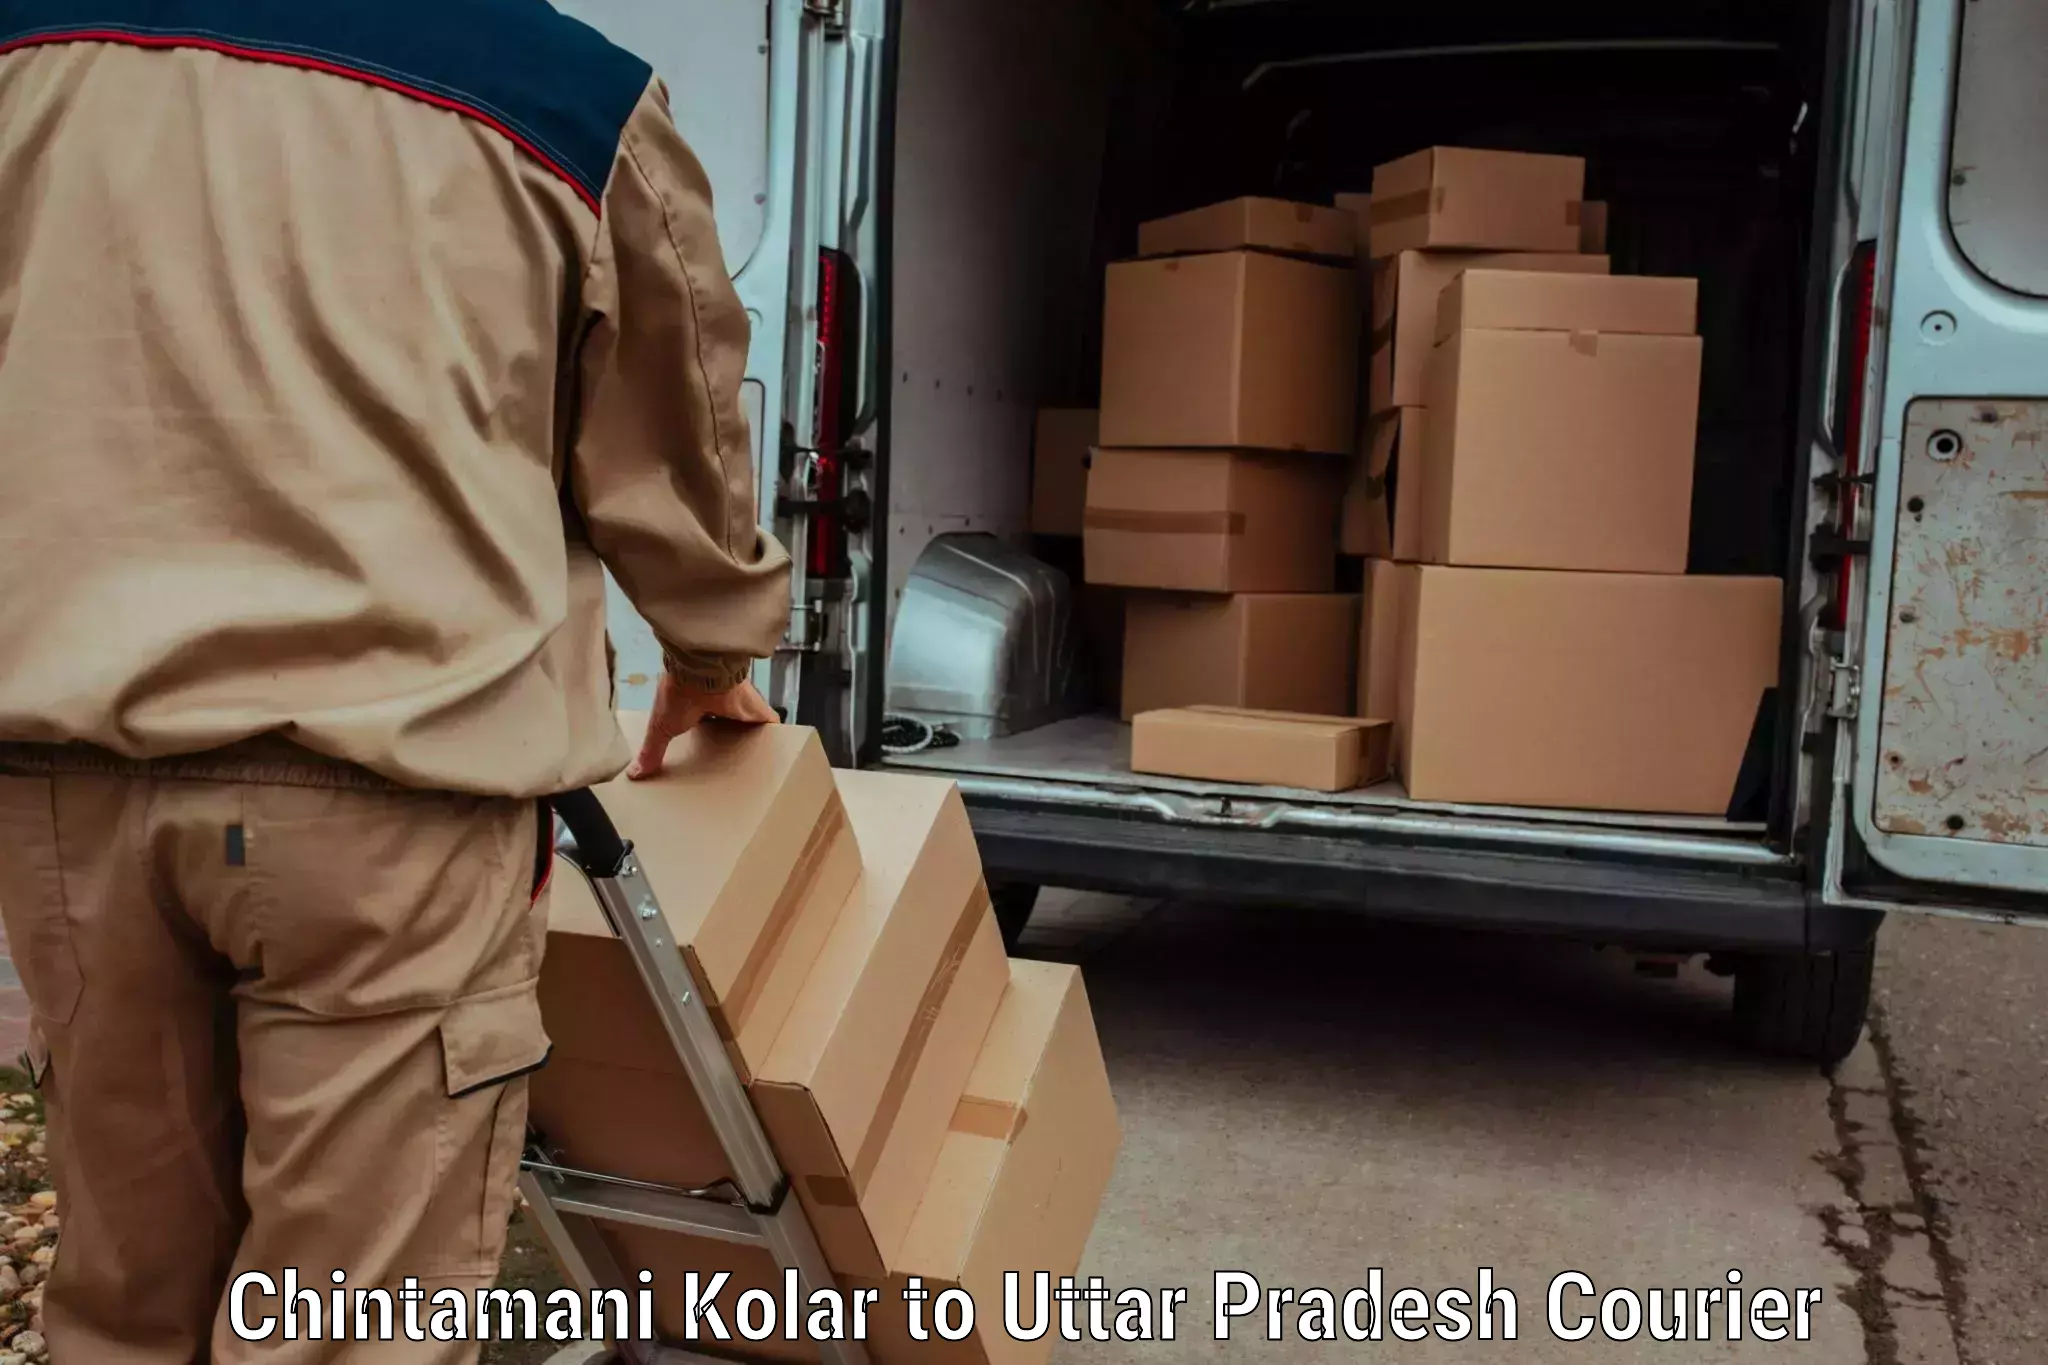 Holiday shipping services Chintamani Kolar to Kushinagar